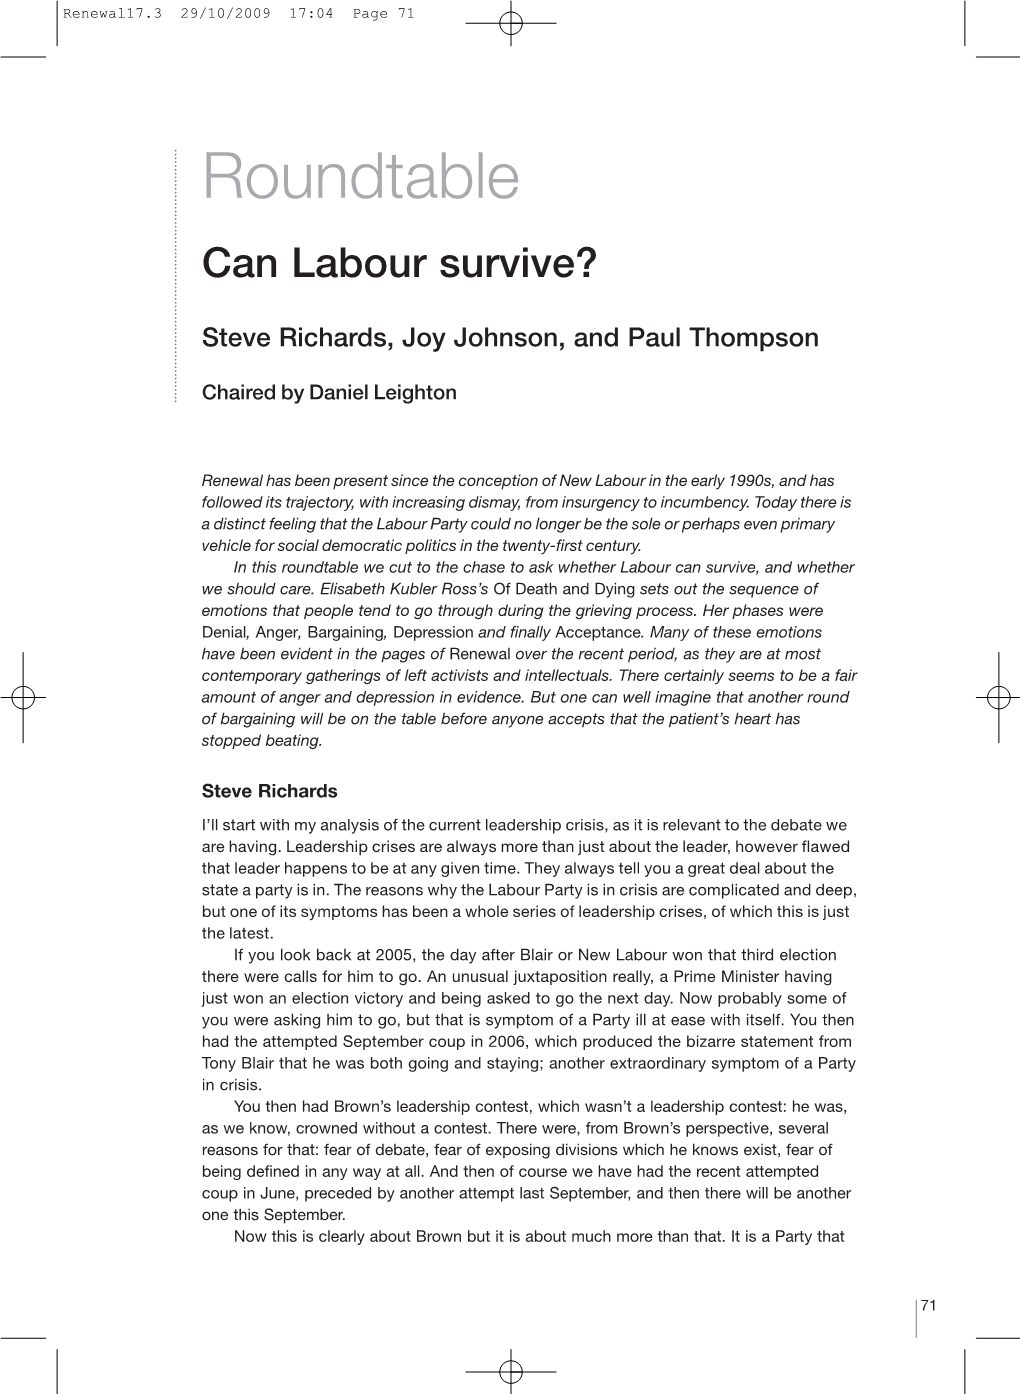 Steve Richards, Joy Johnson and Paul Thompson, Can Labour Survive?